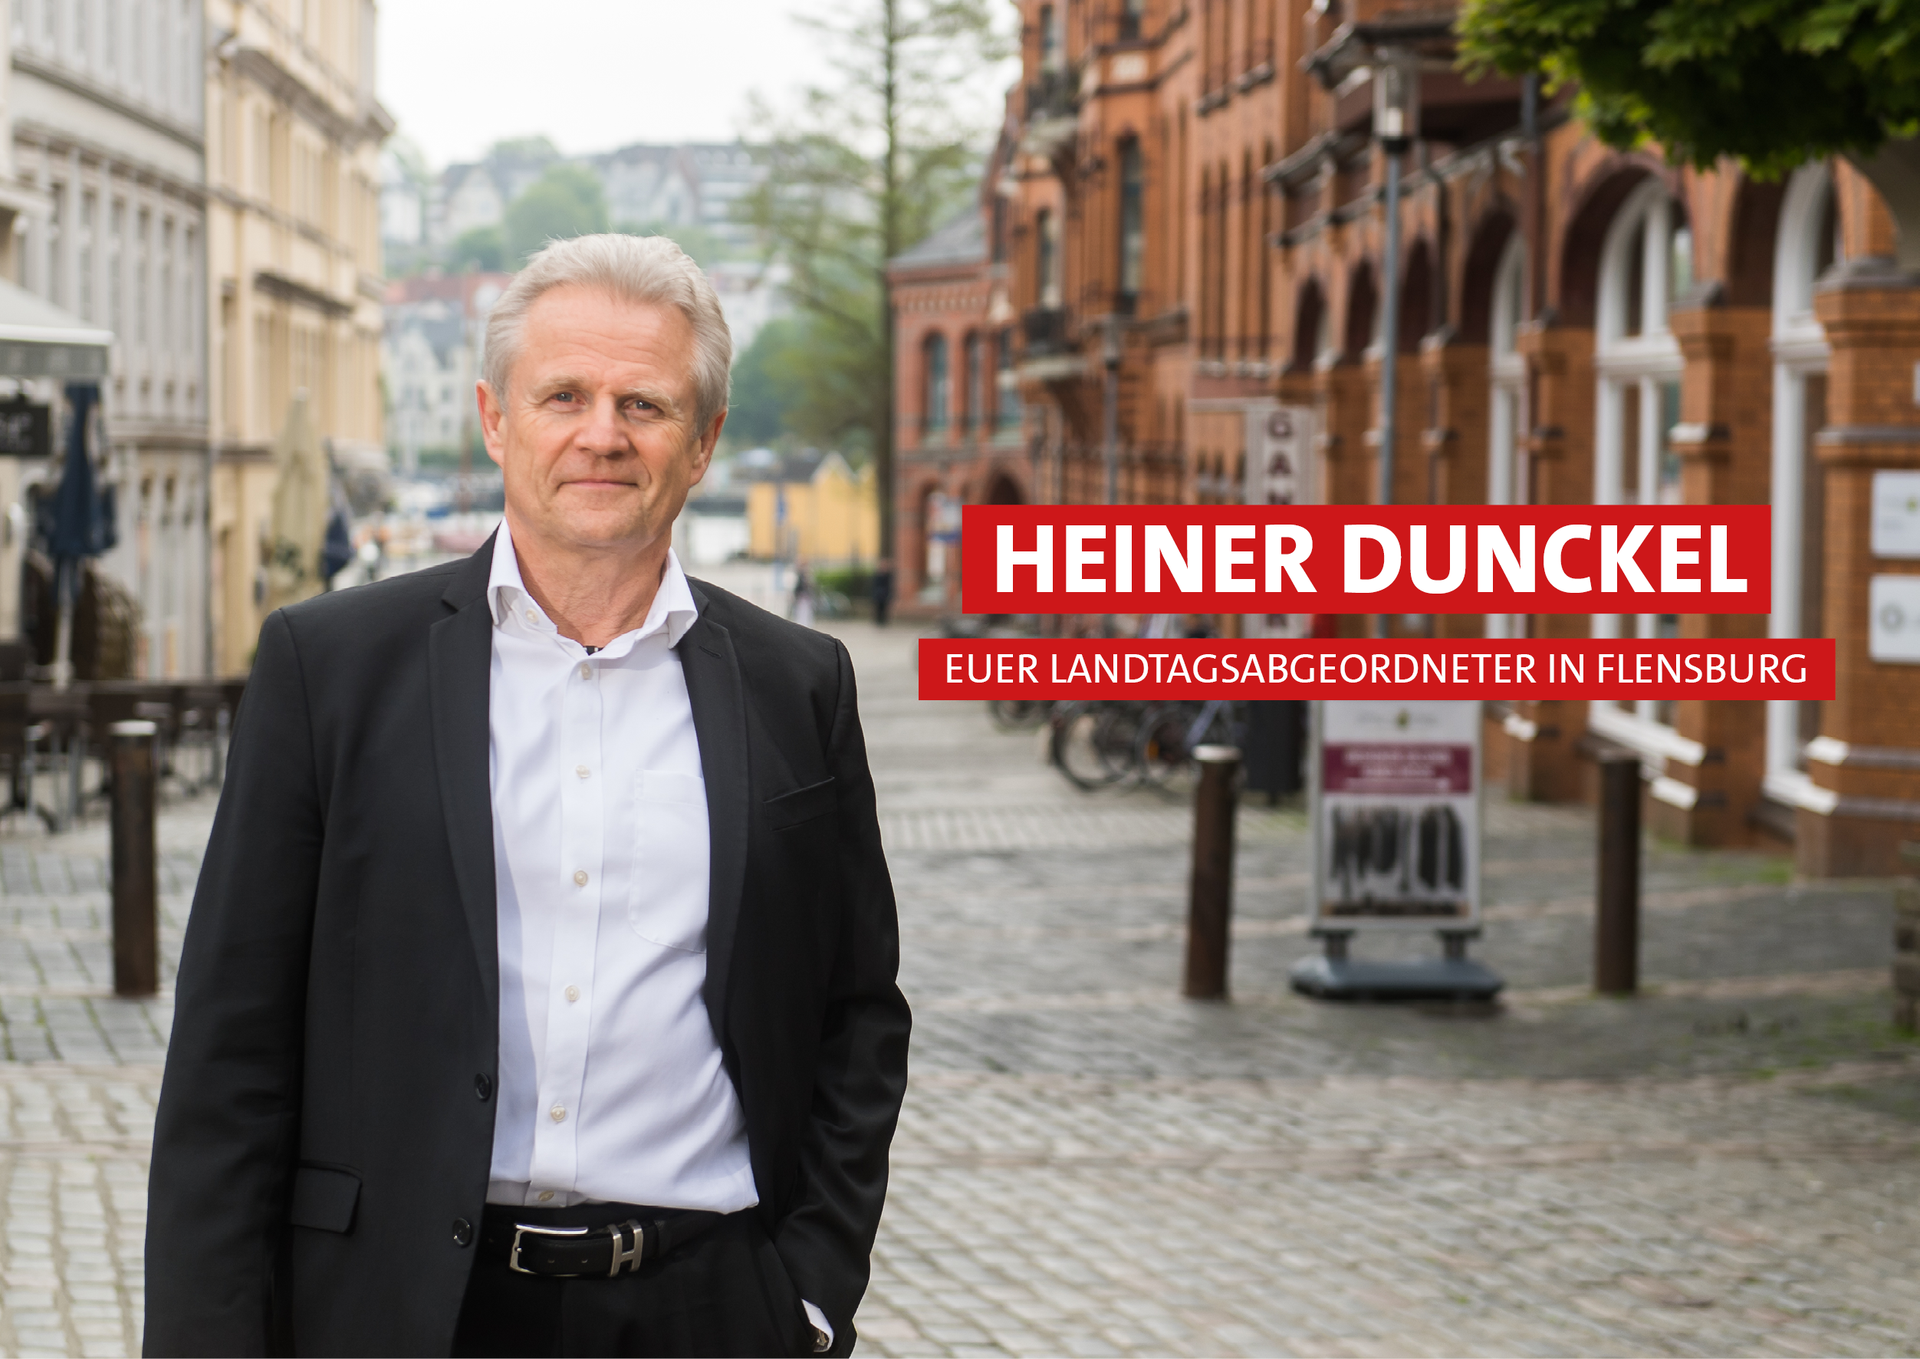 (c) Heiner-dunckel.de